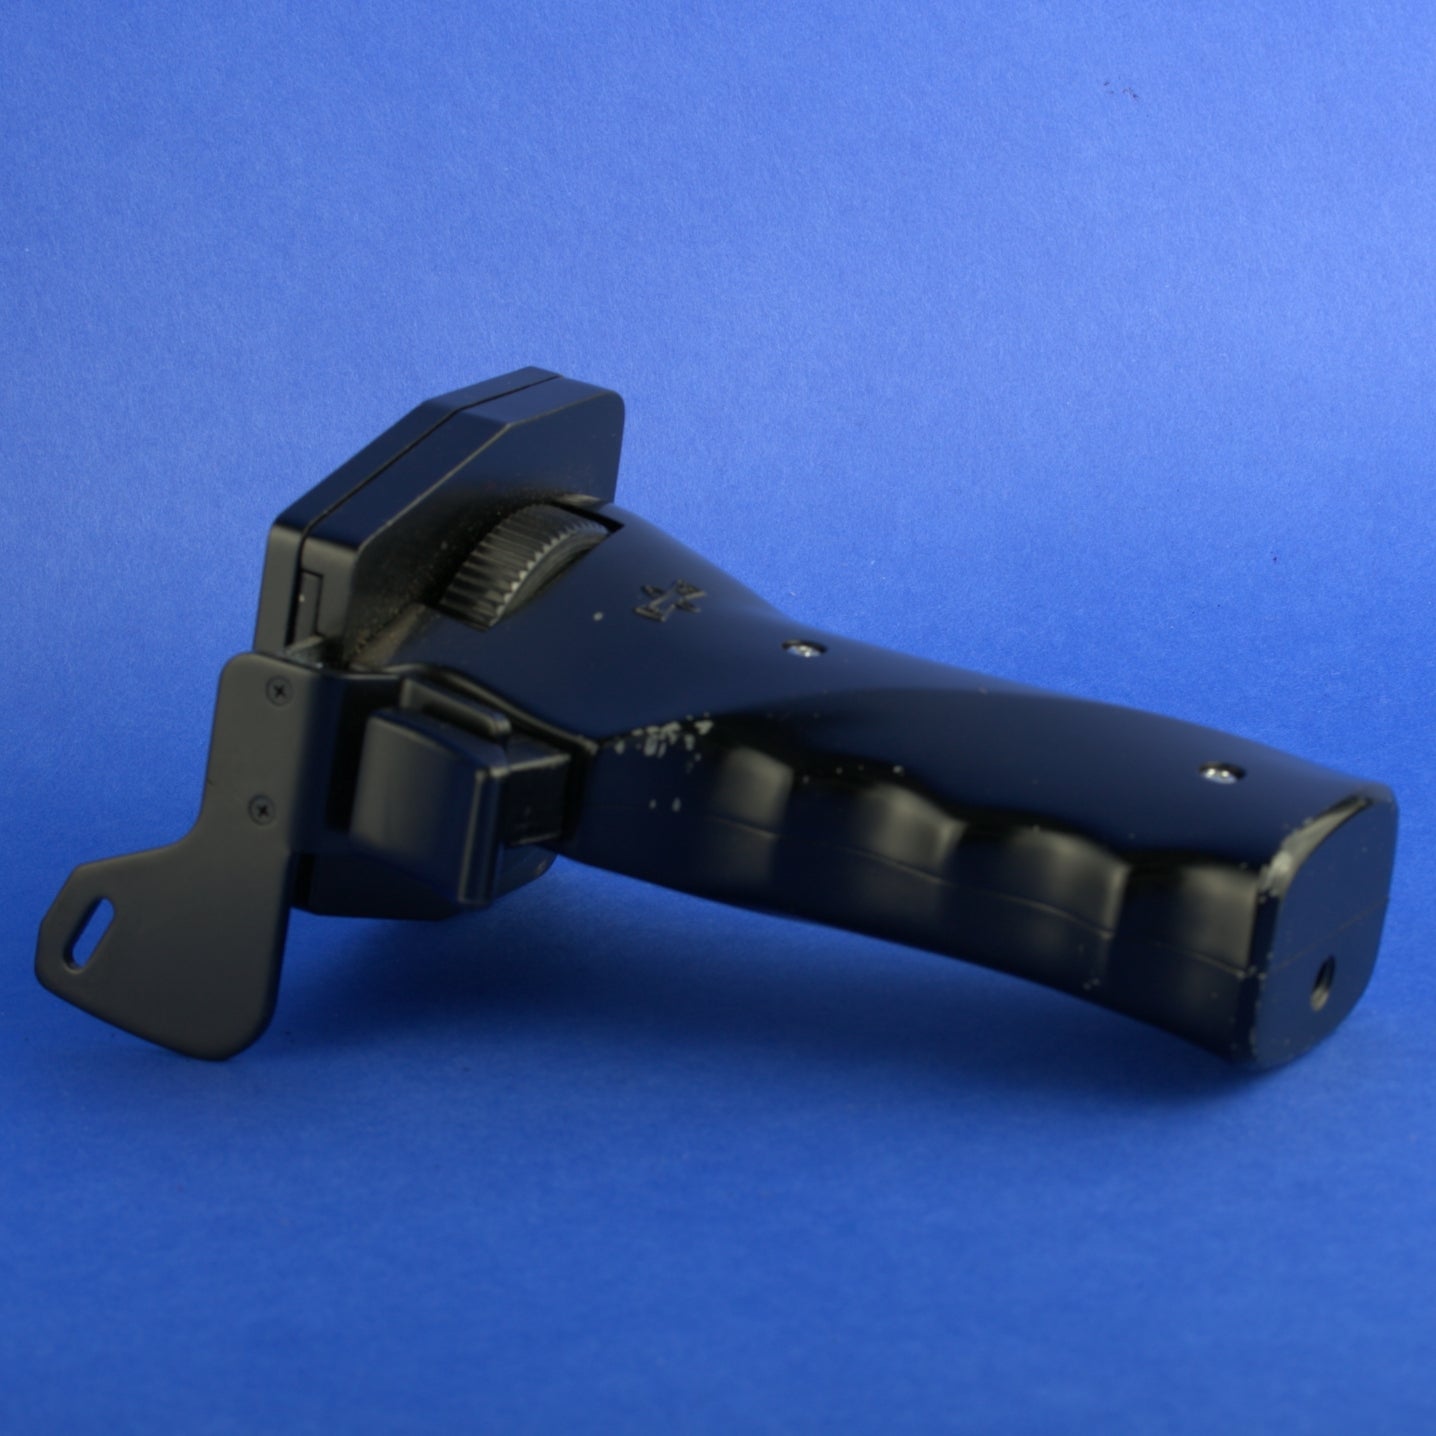 Mamiya Pistol Grip for Medium Format Cameras